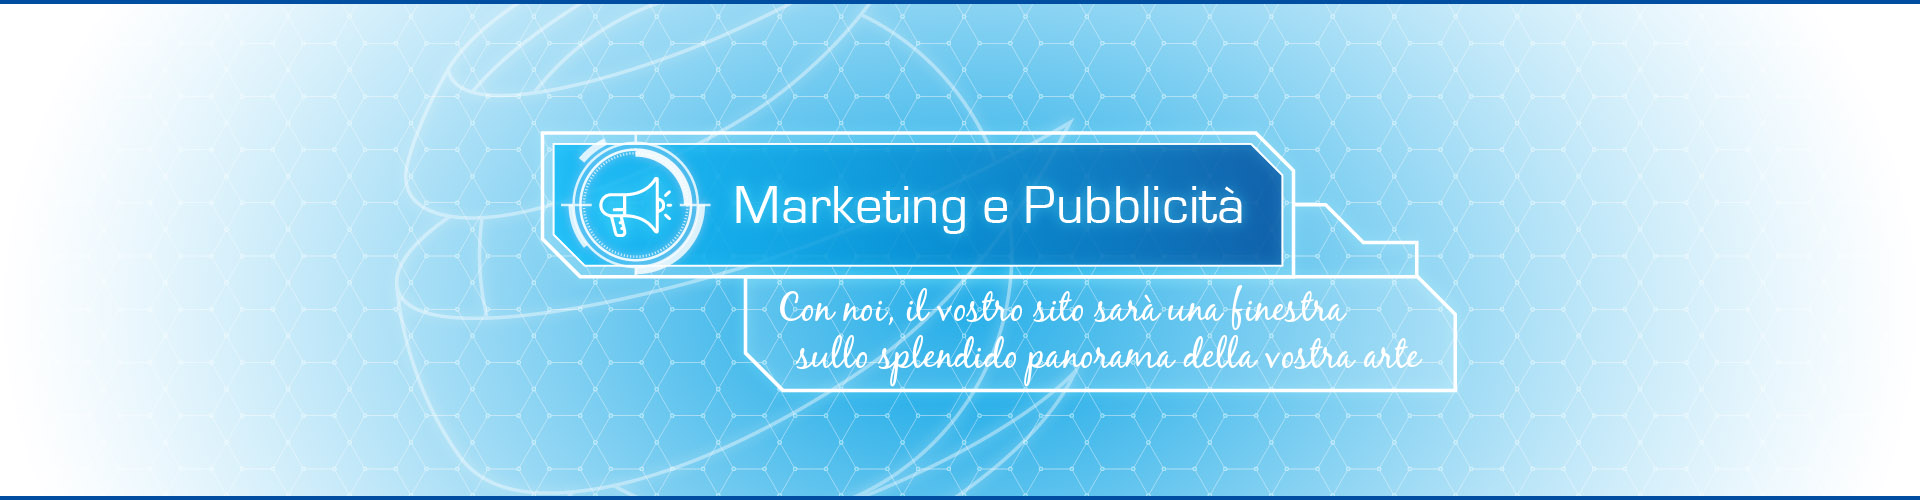 Marketing e Pubblicità